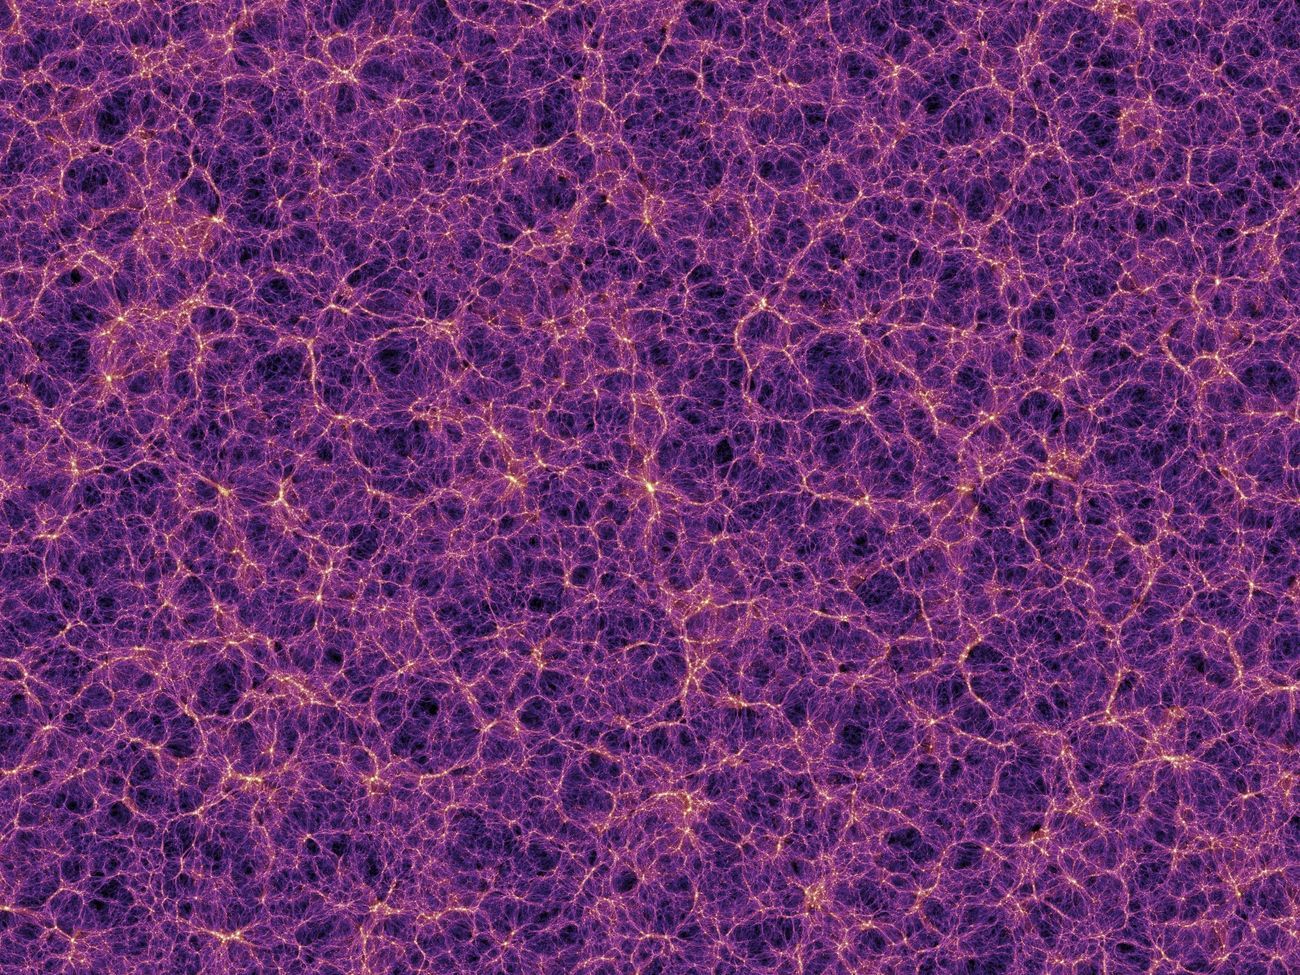 Simulazione software dell'Universo su grande scala ©Max Planck Institute for Astrophysics